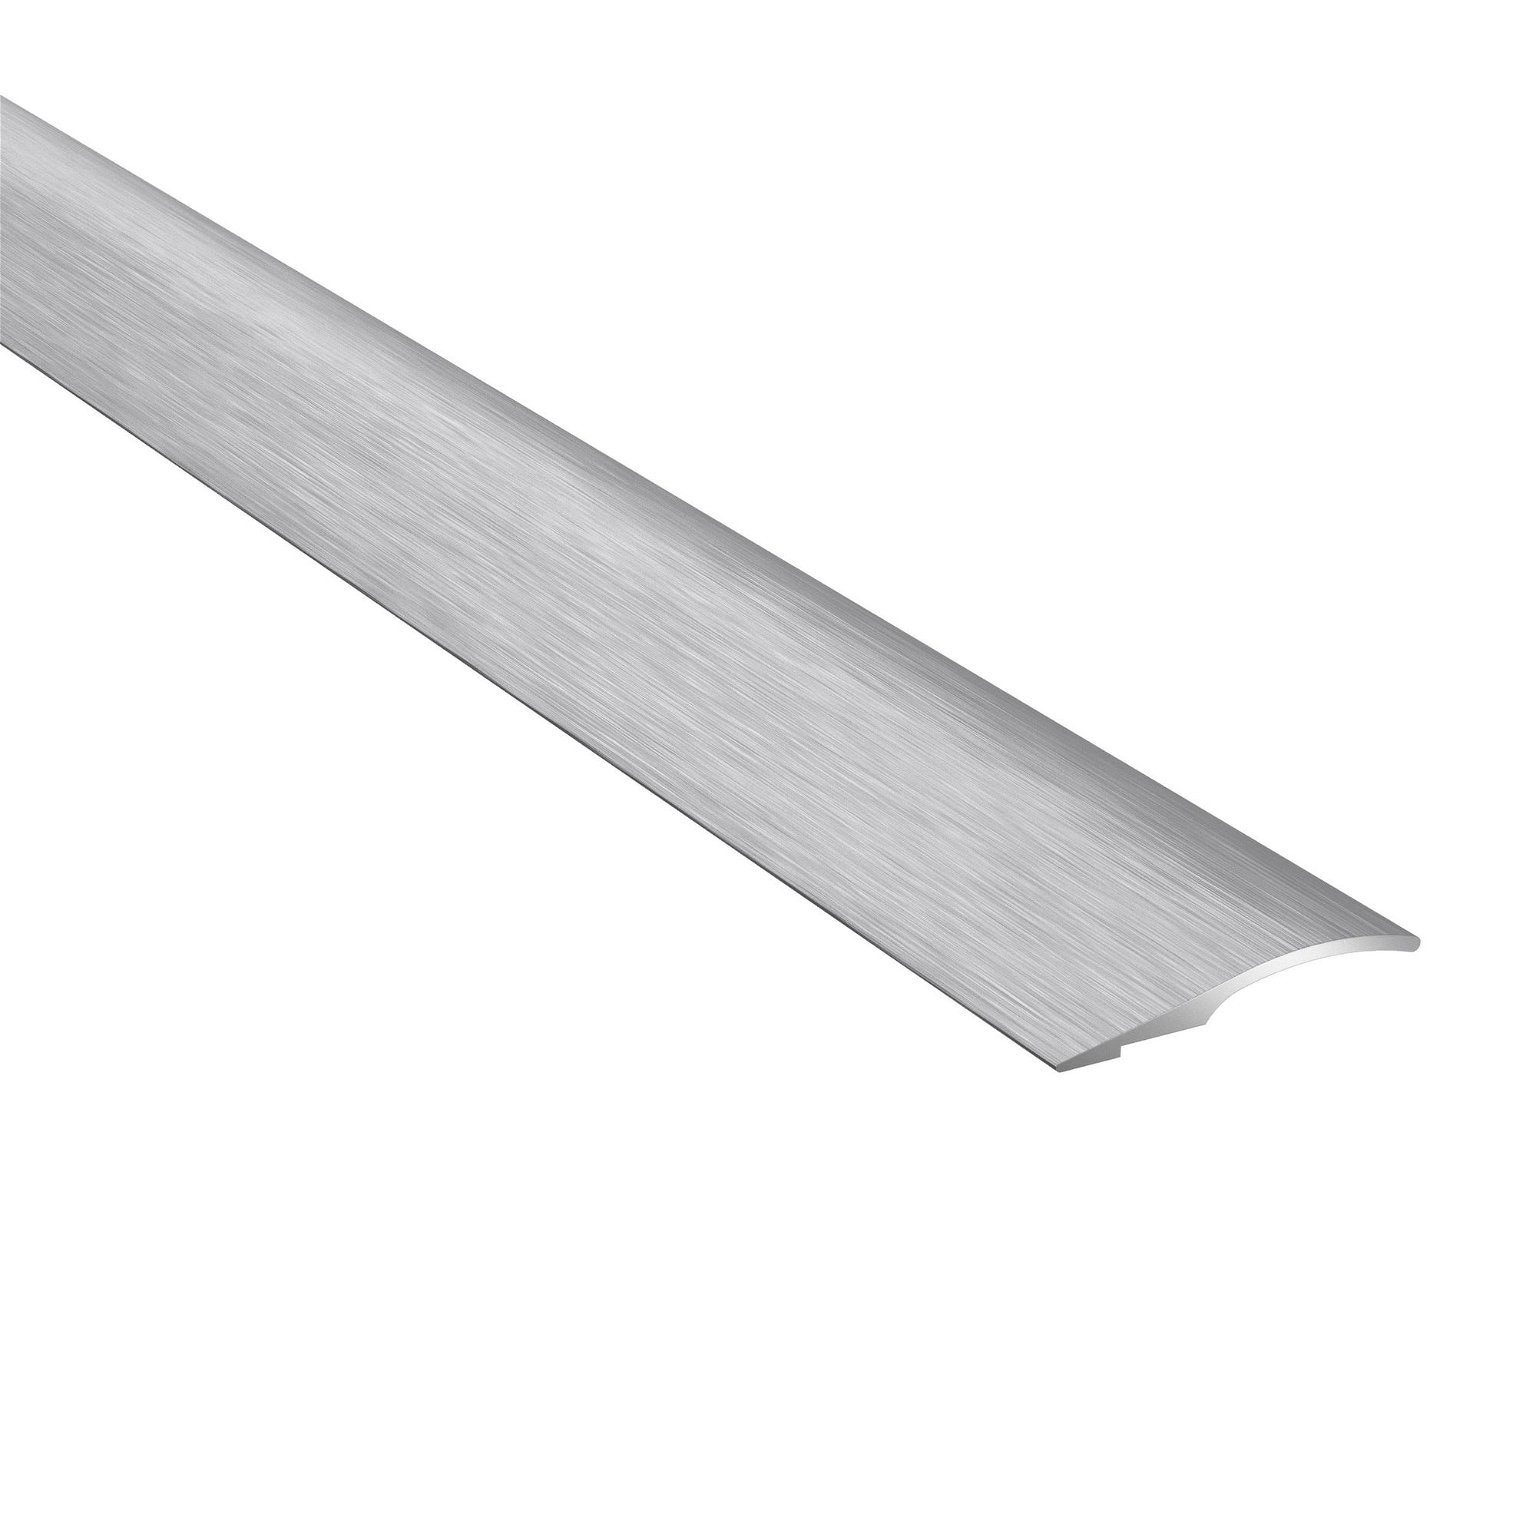 Aliumininė grindų juostelė PRO26 B1, šukuoto sidabro sp., 26 mm pločio, 186 cm ilgio